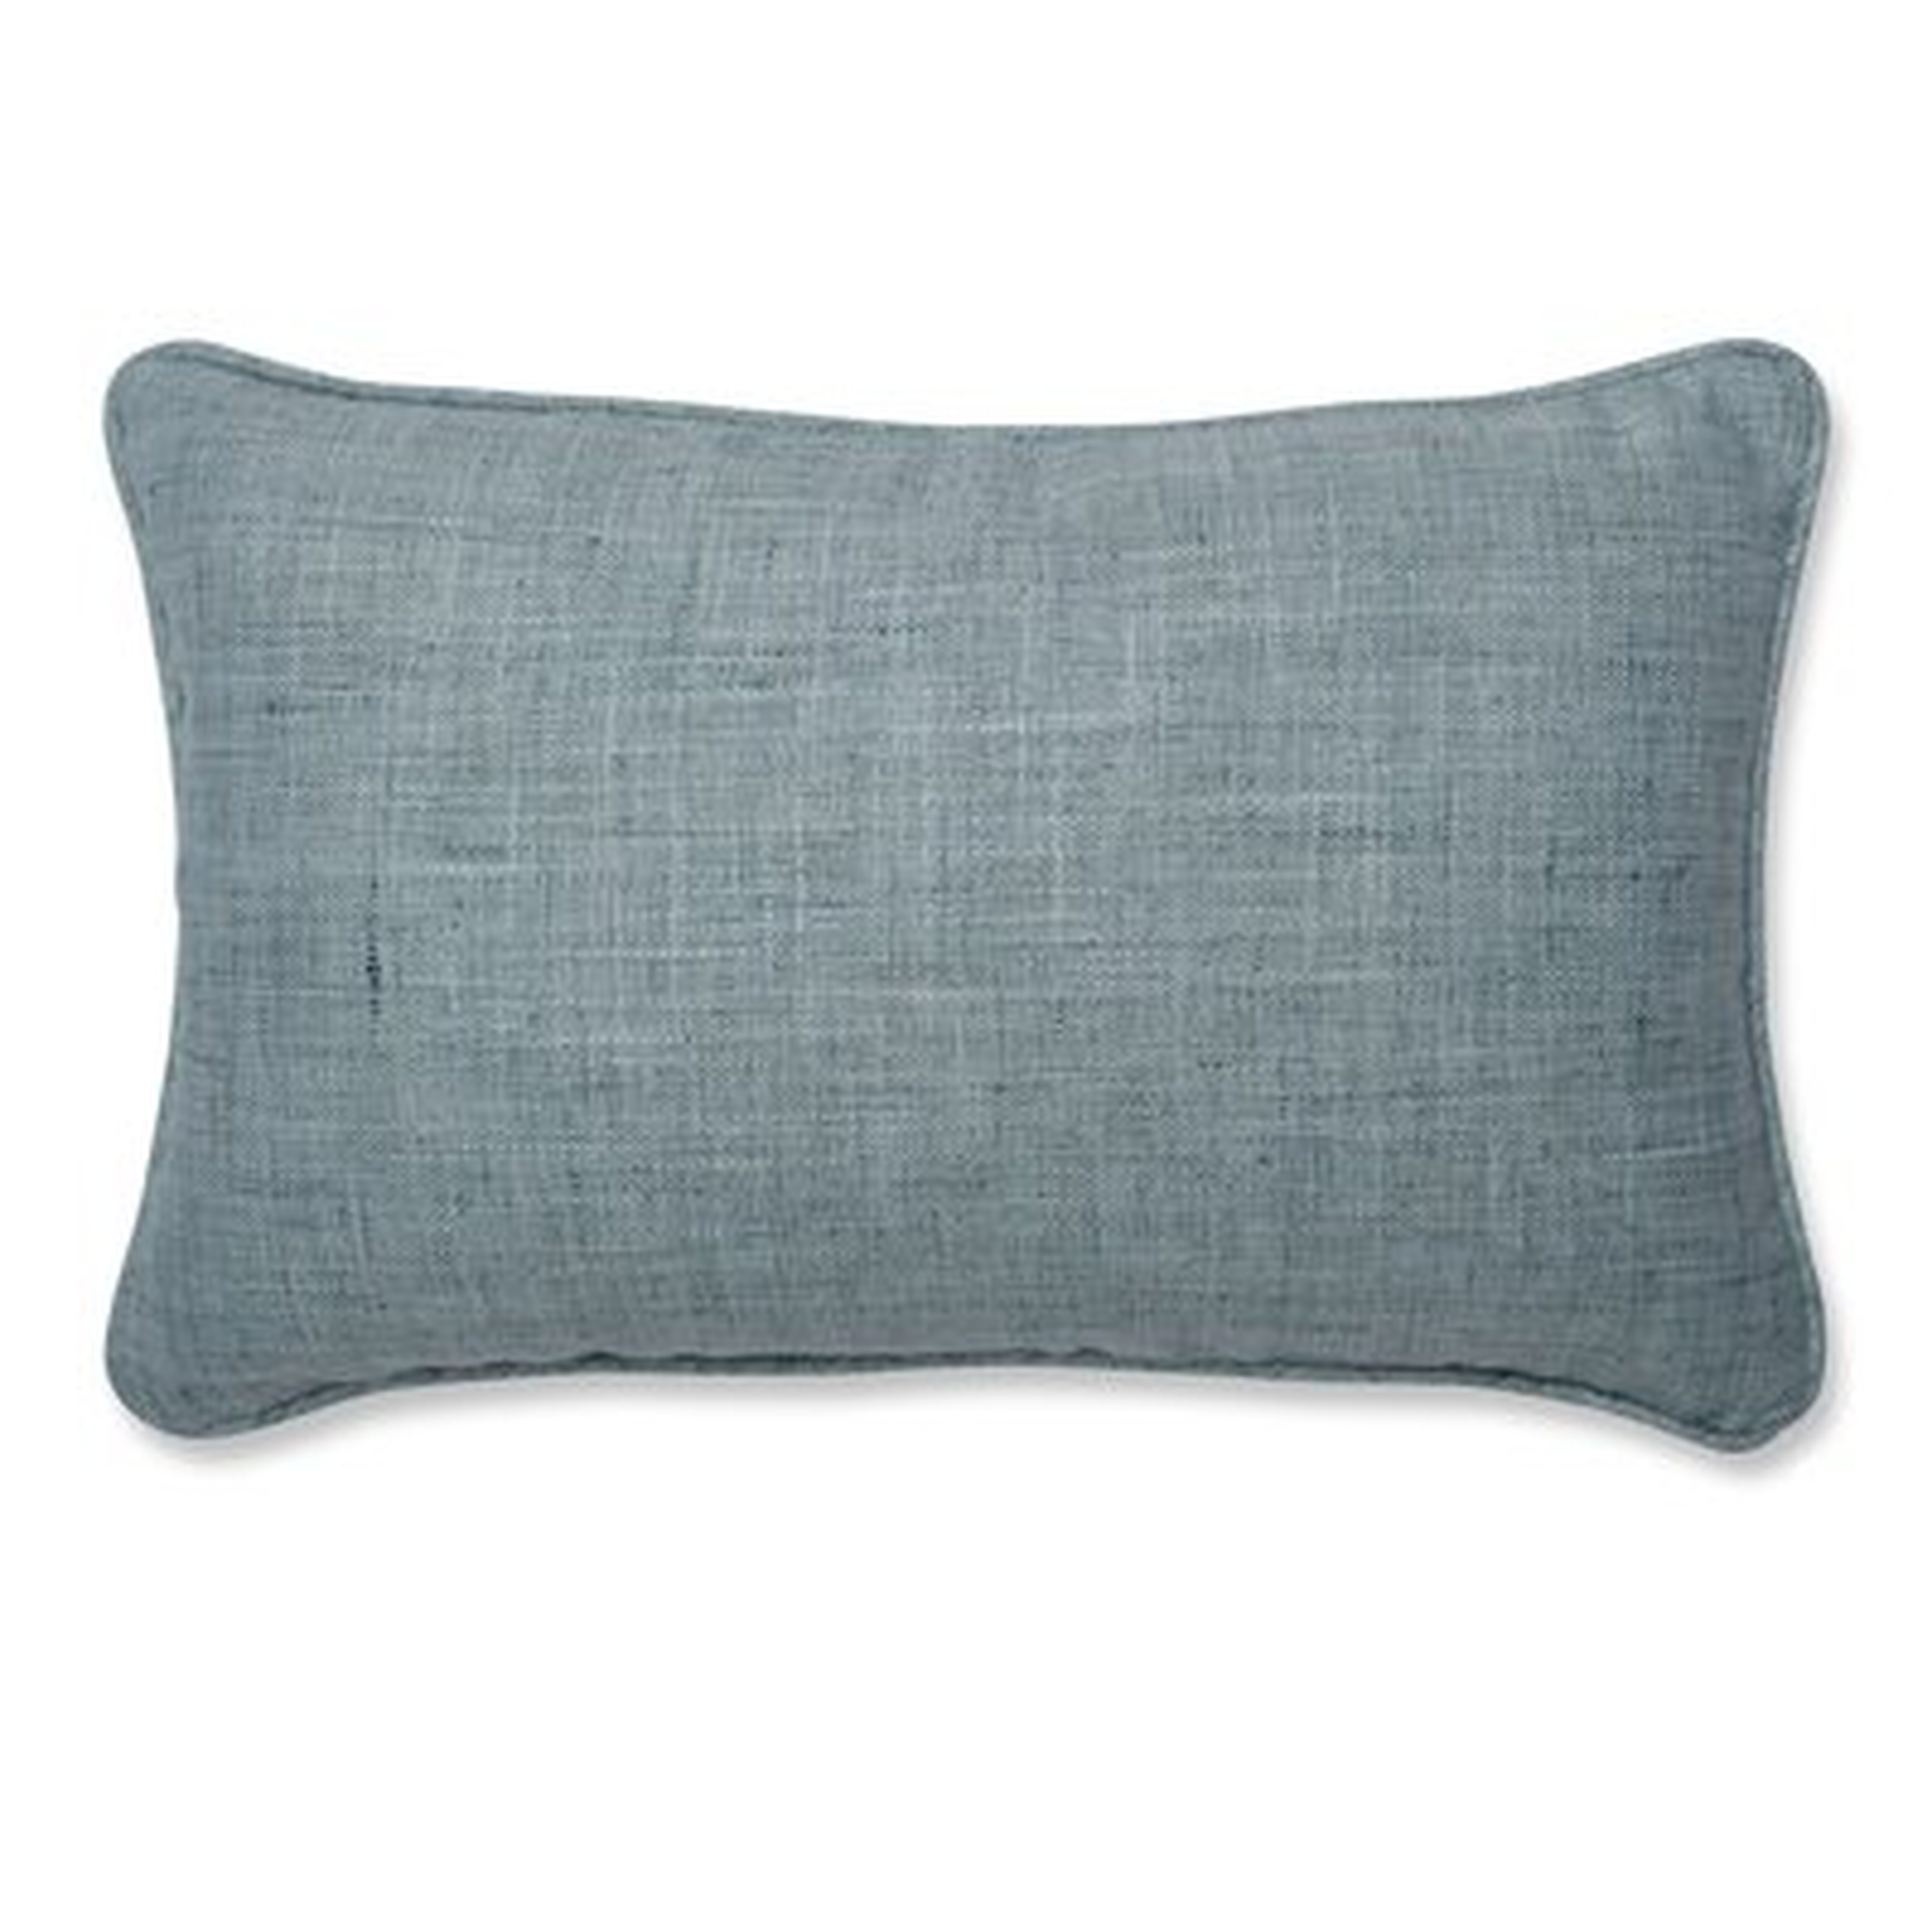 Shanks Lumbar Pillow - Wayfair